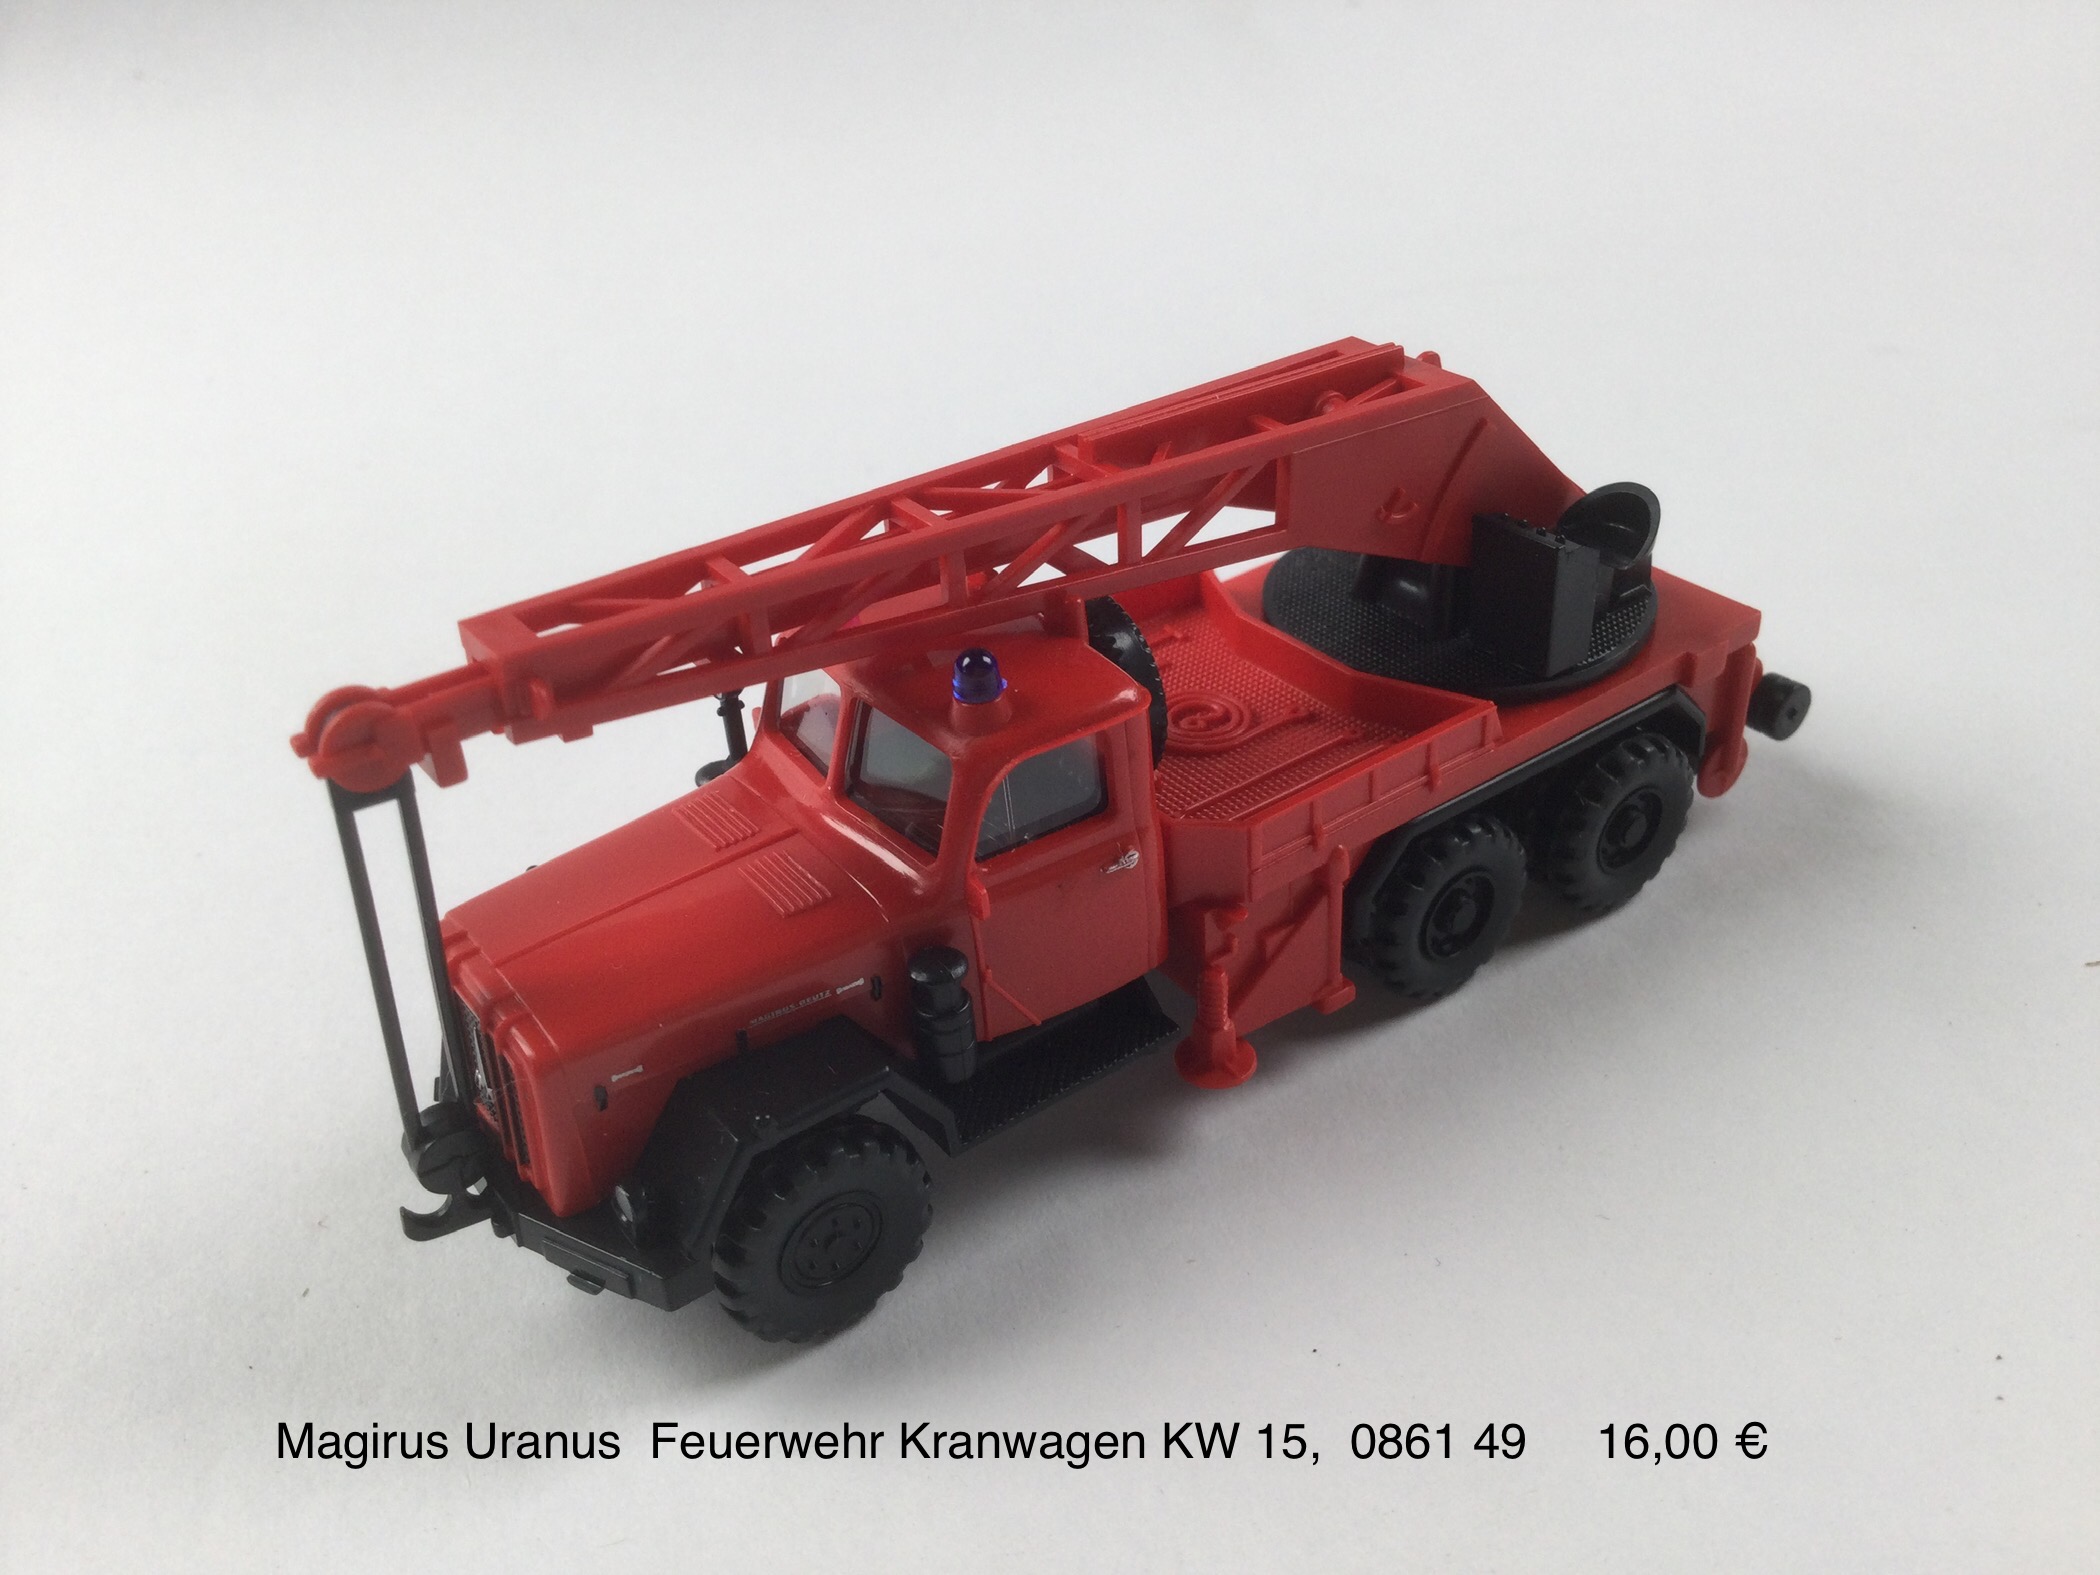 Magirus Uranus Feuerwehr Kranwagen KW 15